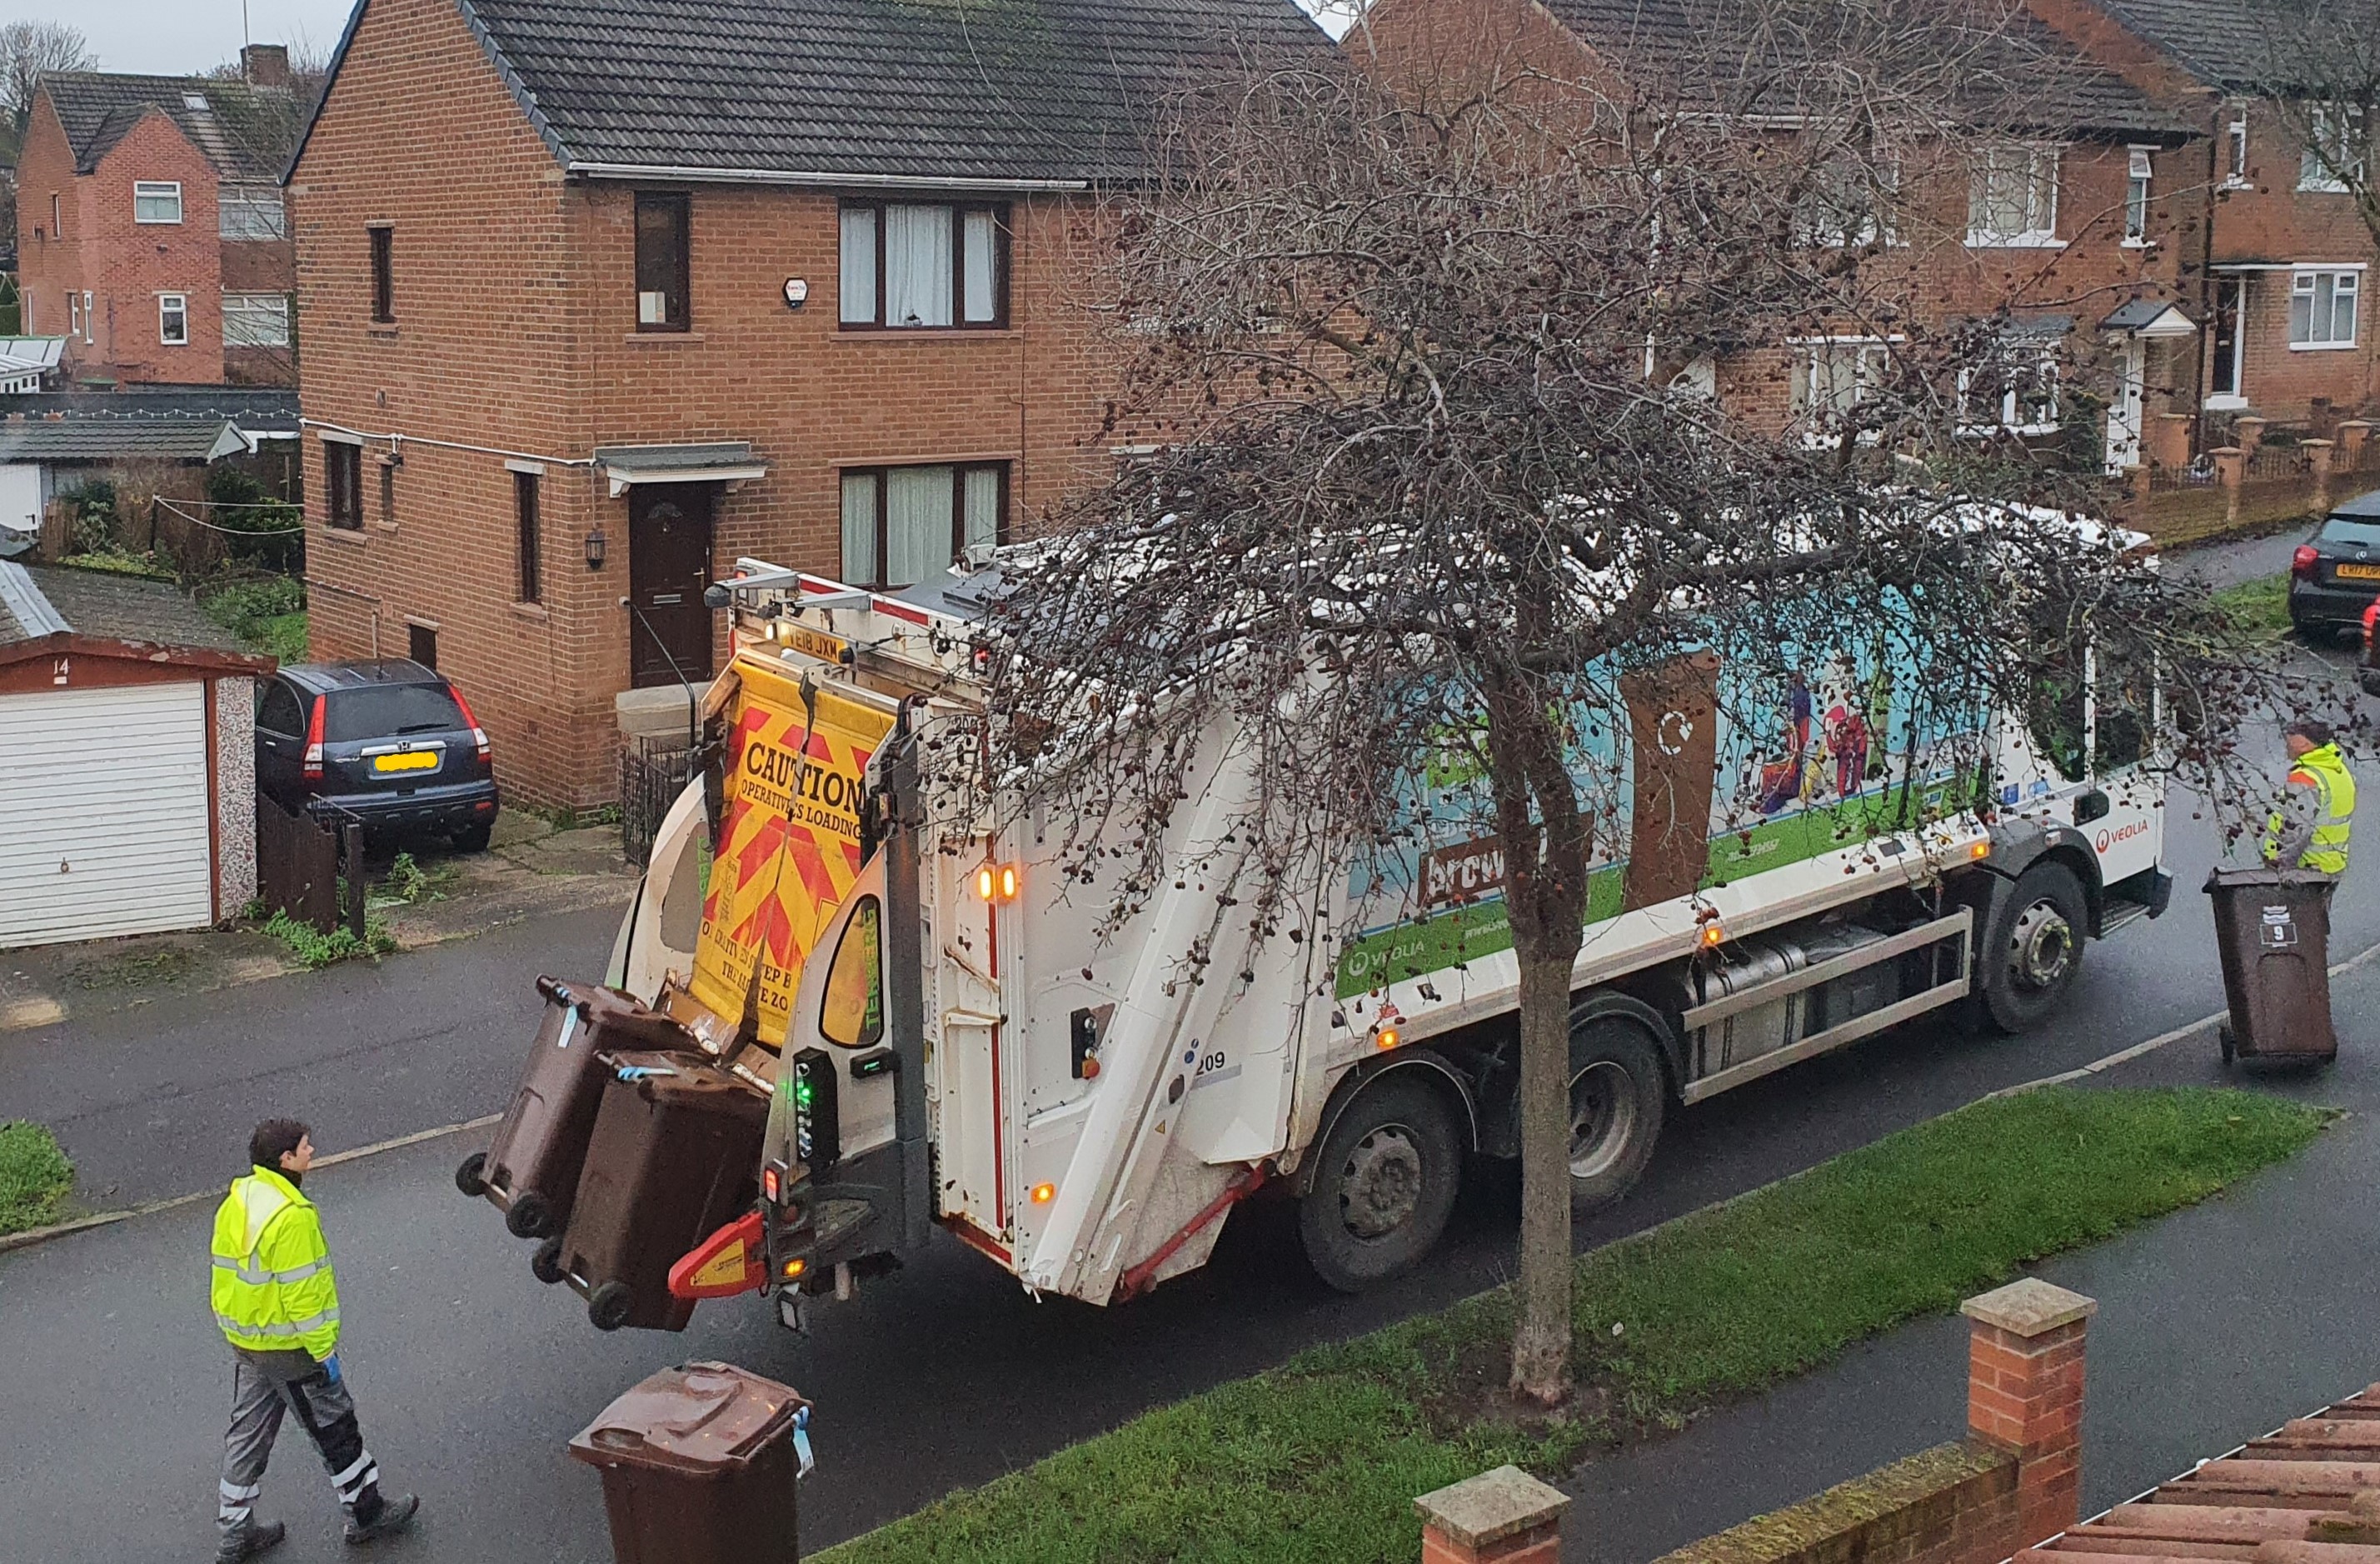 Bin being emptied in to a bin lorry